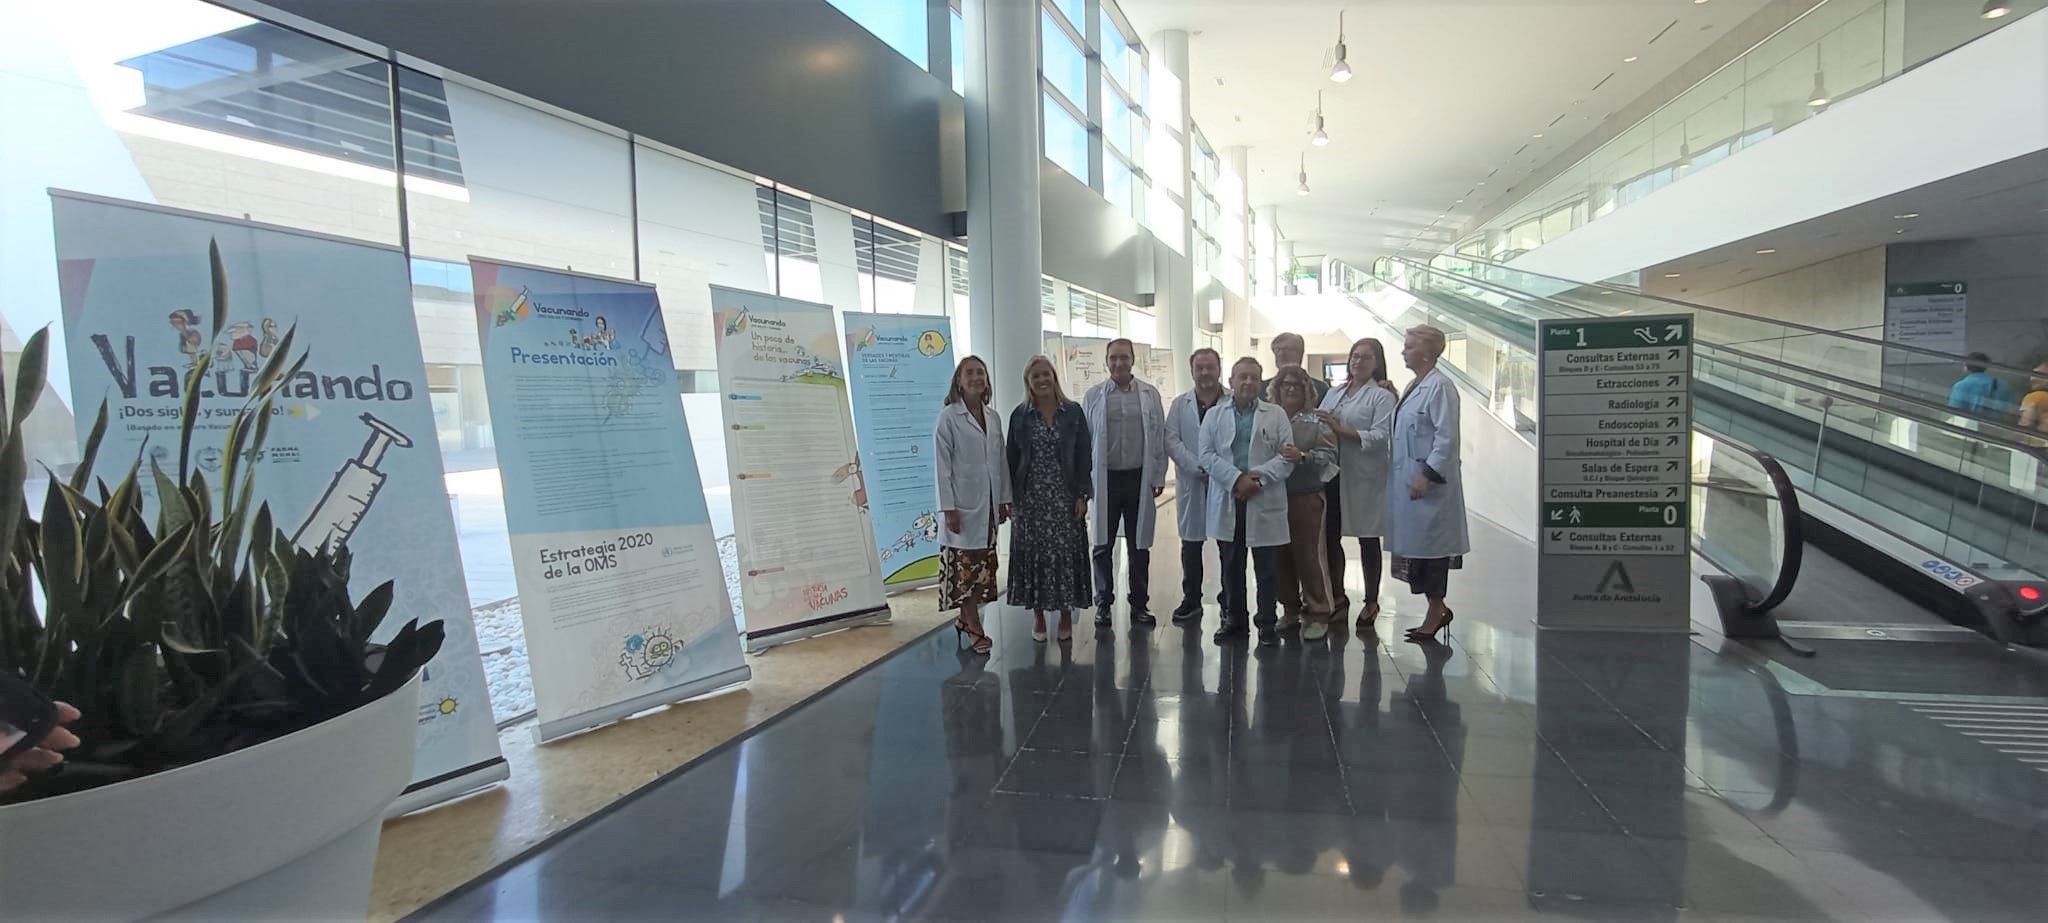 El Hospital de La Línea acoge la exposición divulgativa 'Vacunando: ¡Dos siglos y sumando!'.